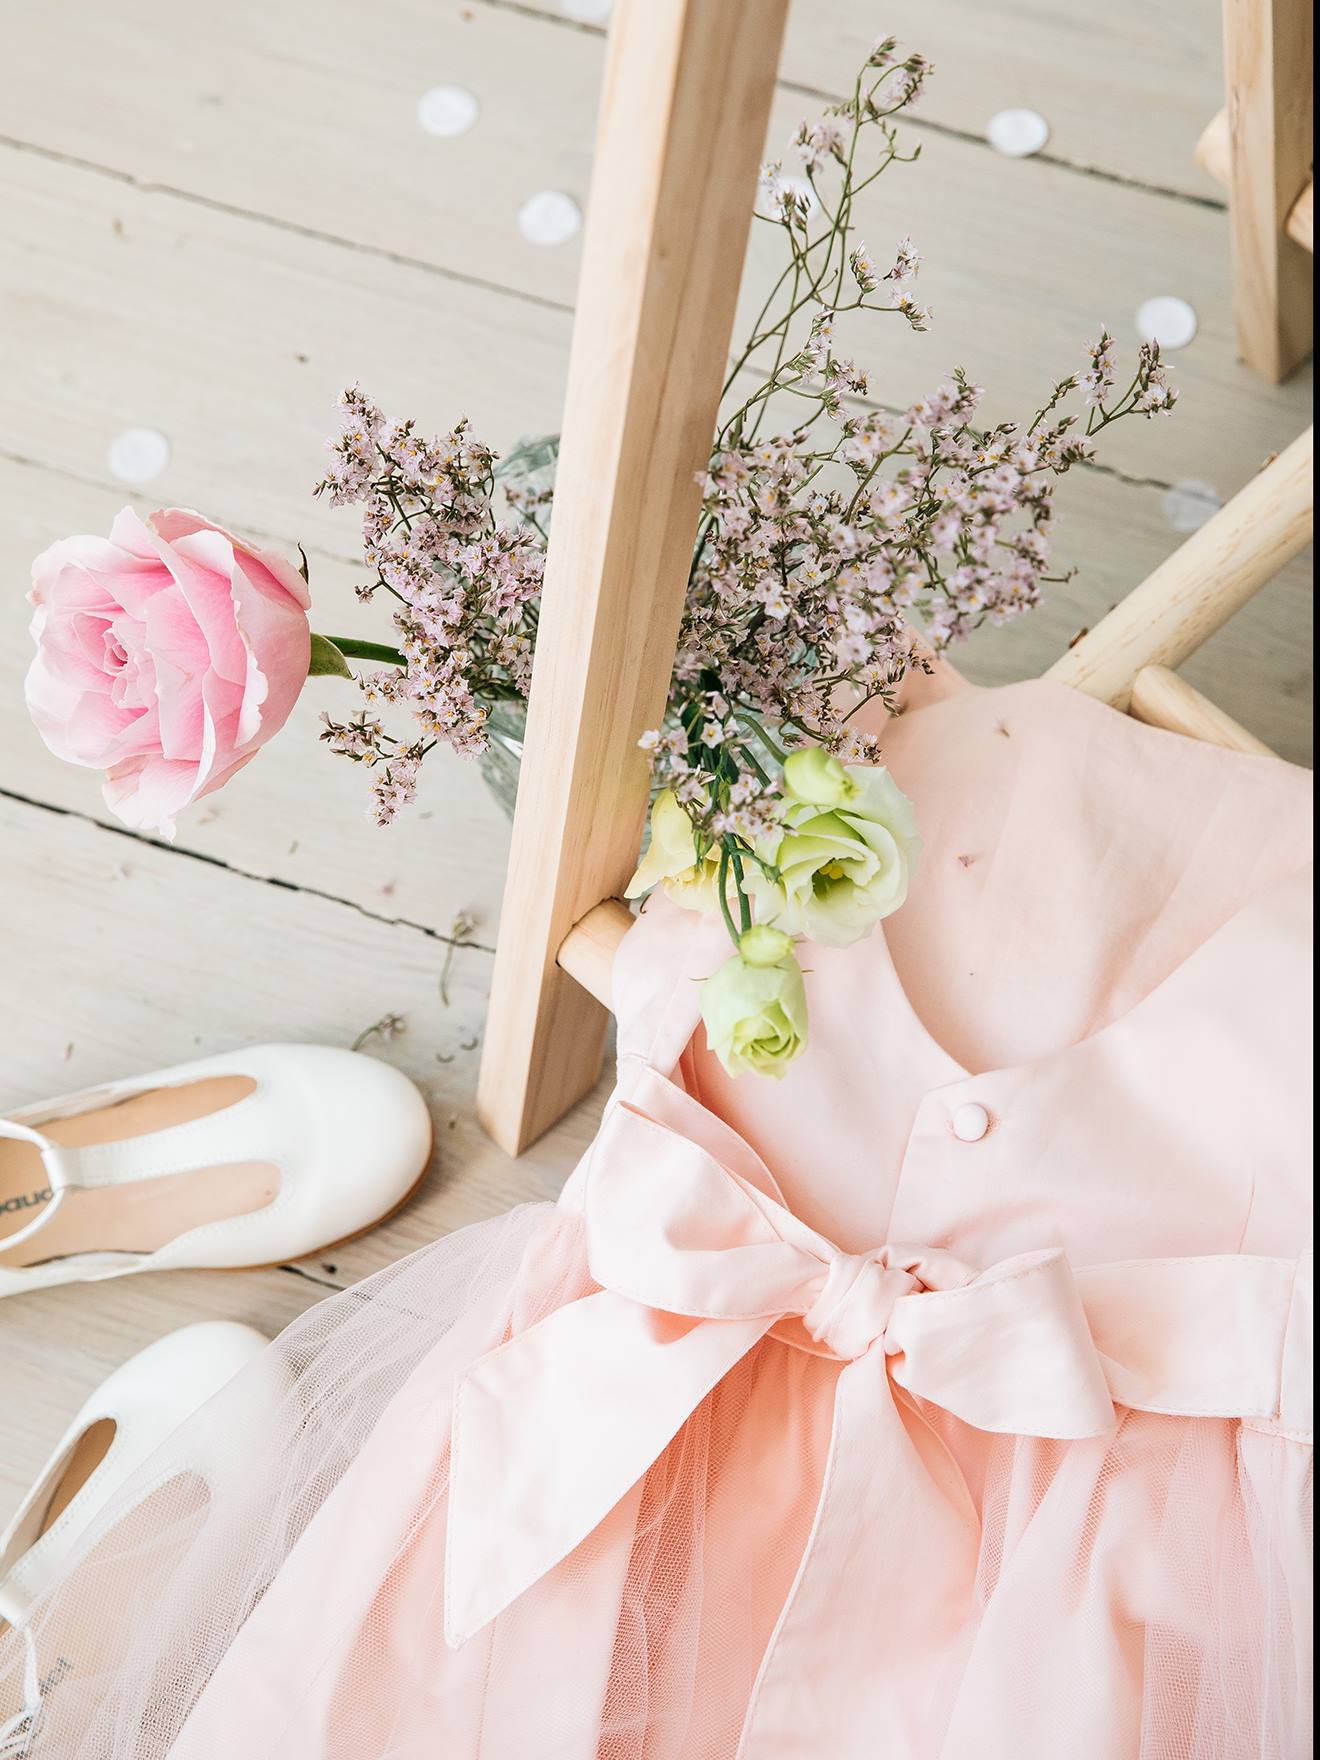 Vêtement de cérémonie rose pour fille Taille 2 ans ( 90/92 cm